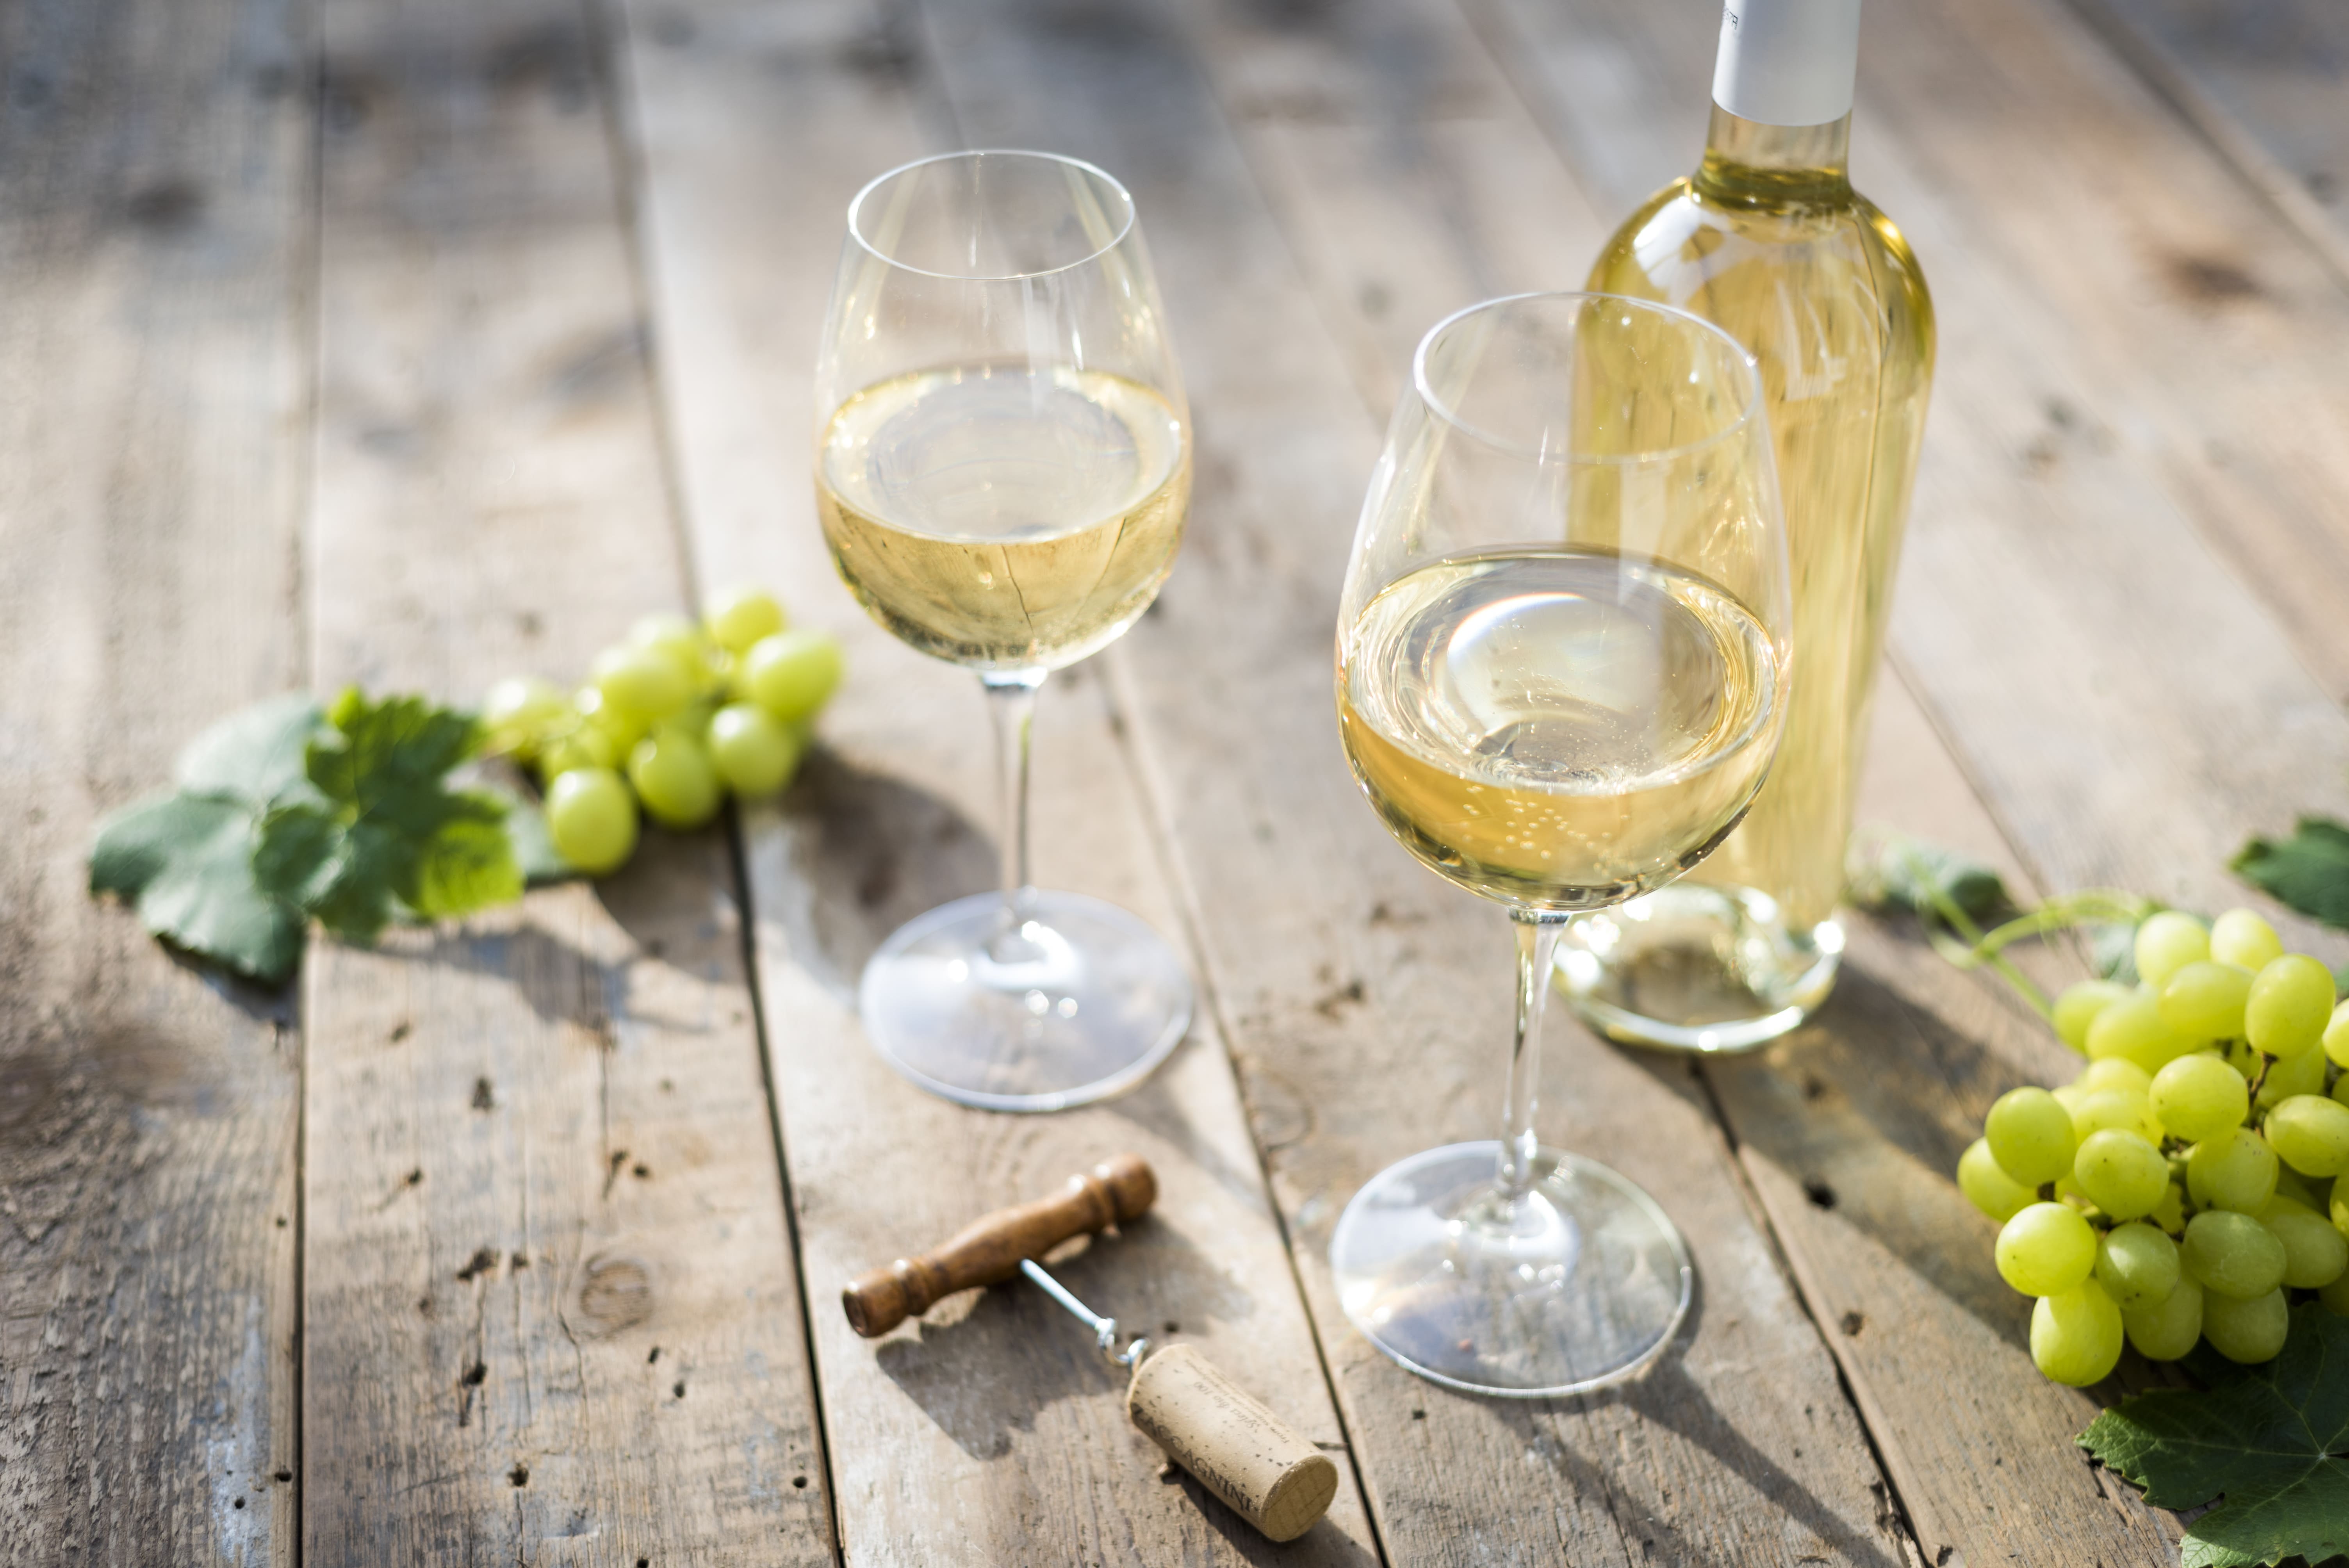 Wino białe wytrawne – do czego pasuje i jak wybrać najlepsze